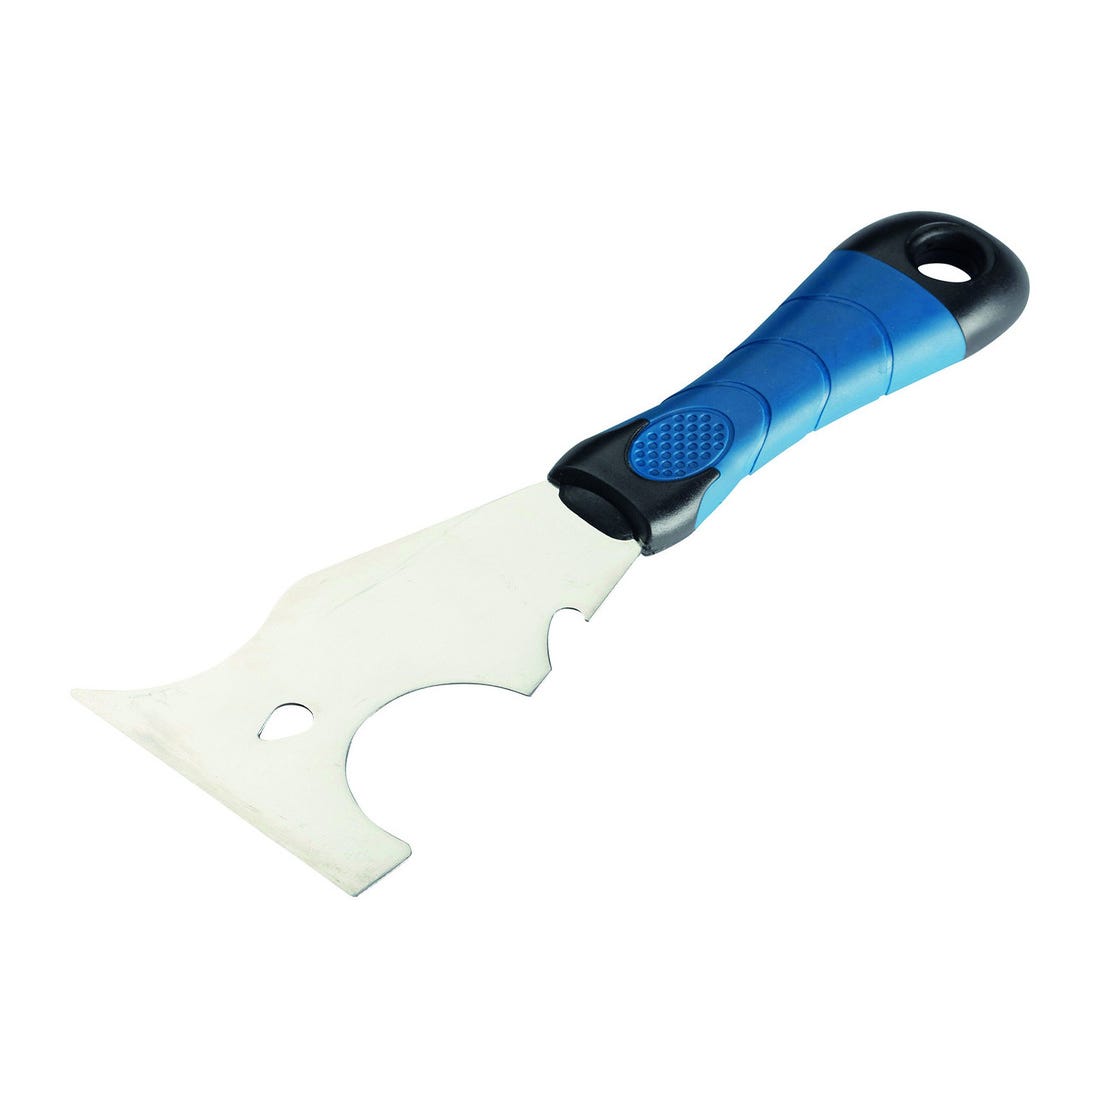 Couteau plaquiste à enduire inox Ocai L.20 cm